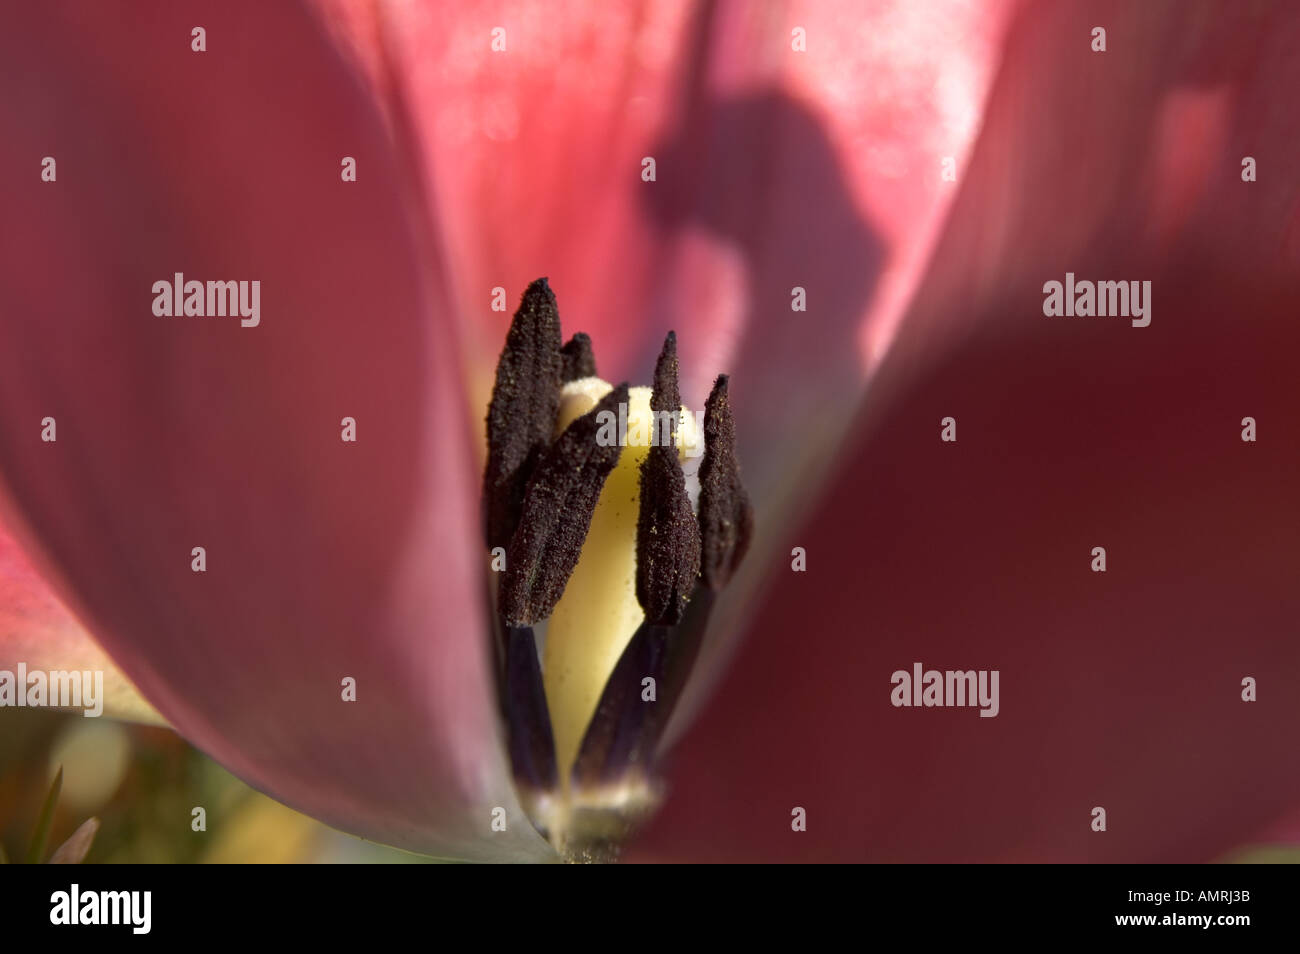 Fruchtblatt Tulpenblüte Stempel von und mit Lelim Michel Narbe Staubblatt Staubbeutel carpelle pistil d'une tulipe avec style la stigmatisation Banque D'Images